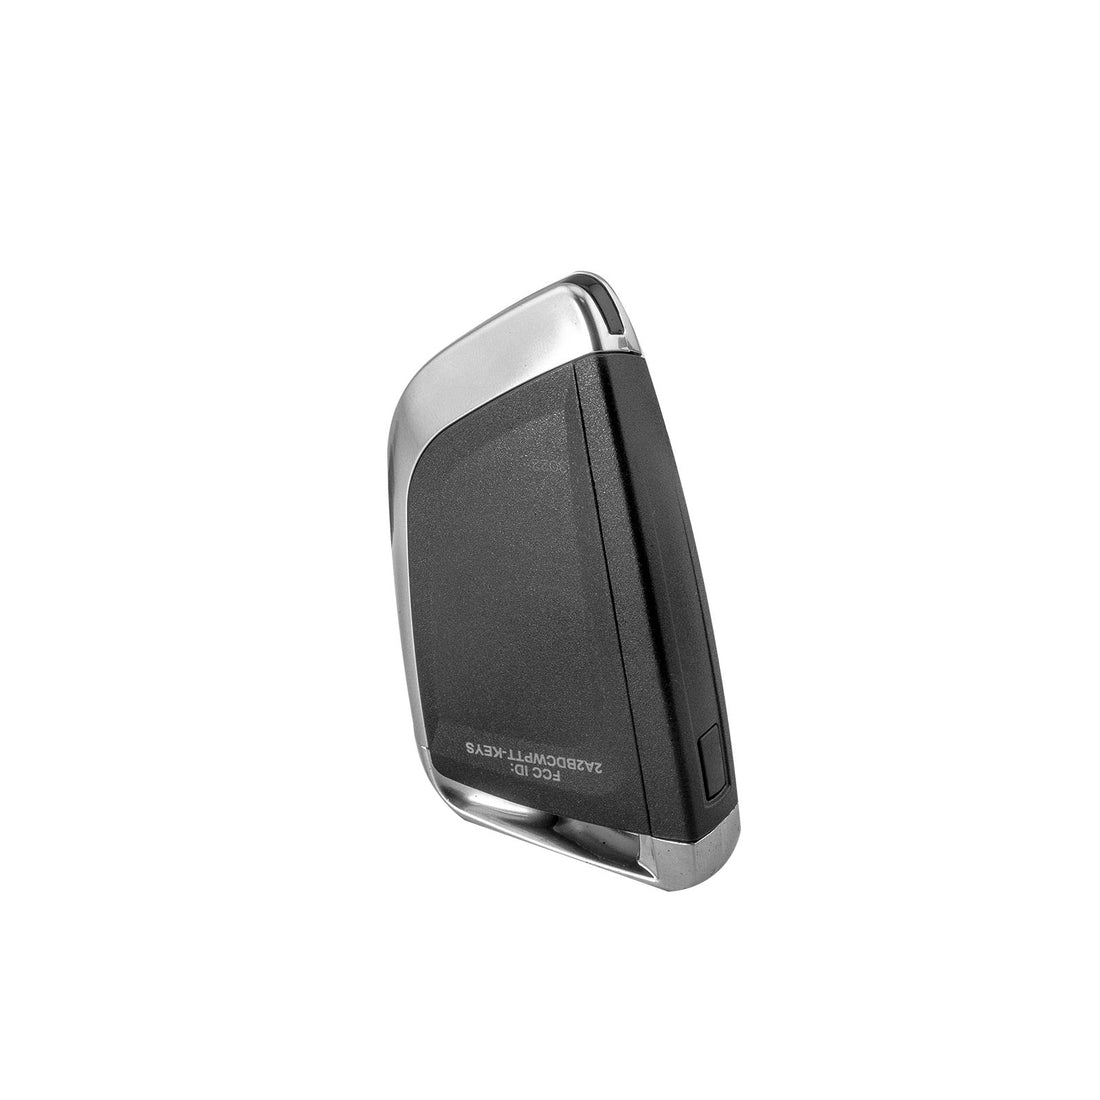 N-ear: Wireless PTT Button - Undercover Key Fob